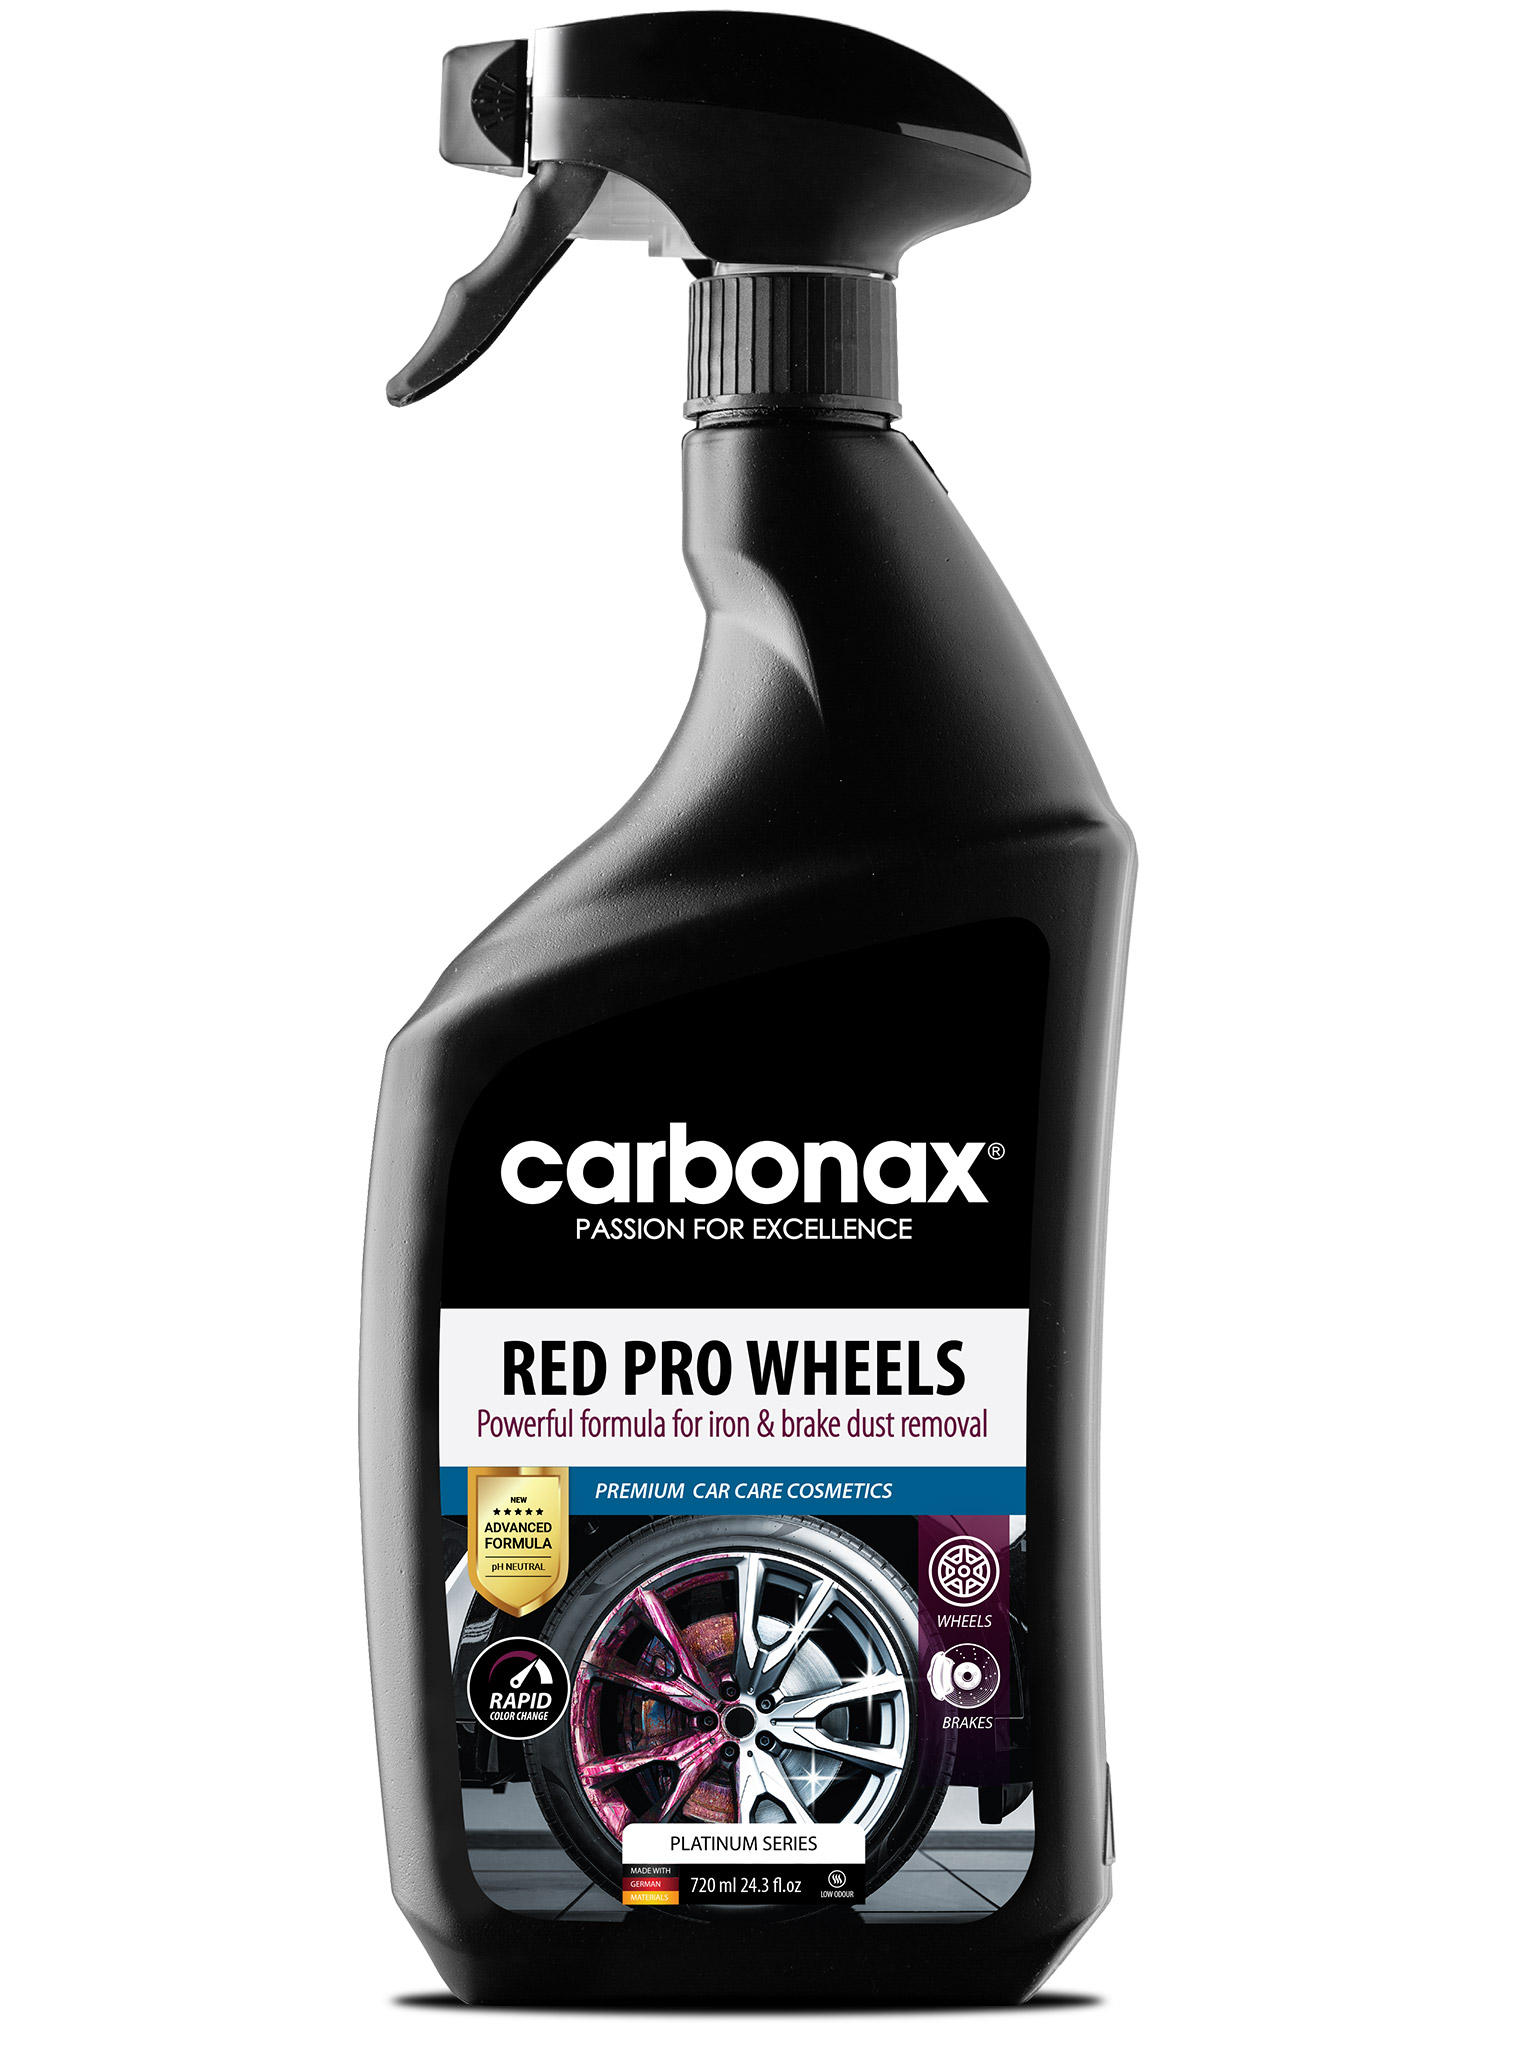 CARBONAX® Erősen koncentrált autóparfüm ENERGIA ITAL illattal, 150ml